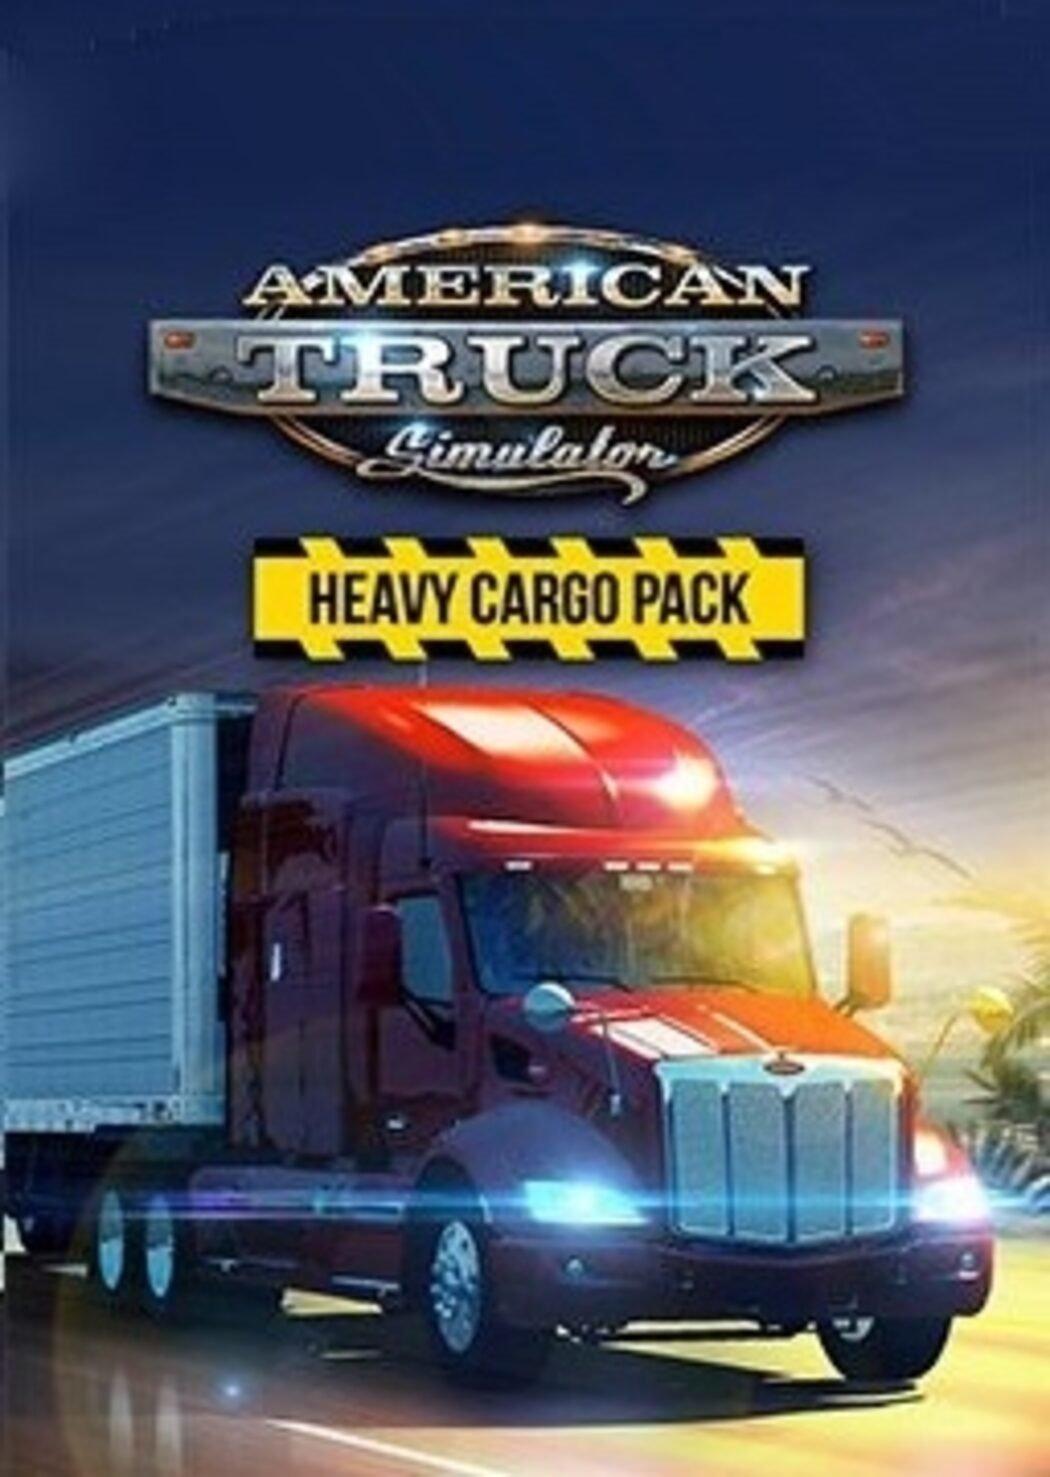 American Truck Simulator - Heavy Cargo Pack | SEA (6c59c06f-f0ad-4306-907c-e6bc922a417e)